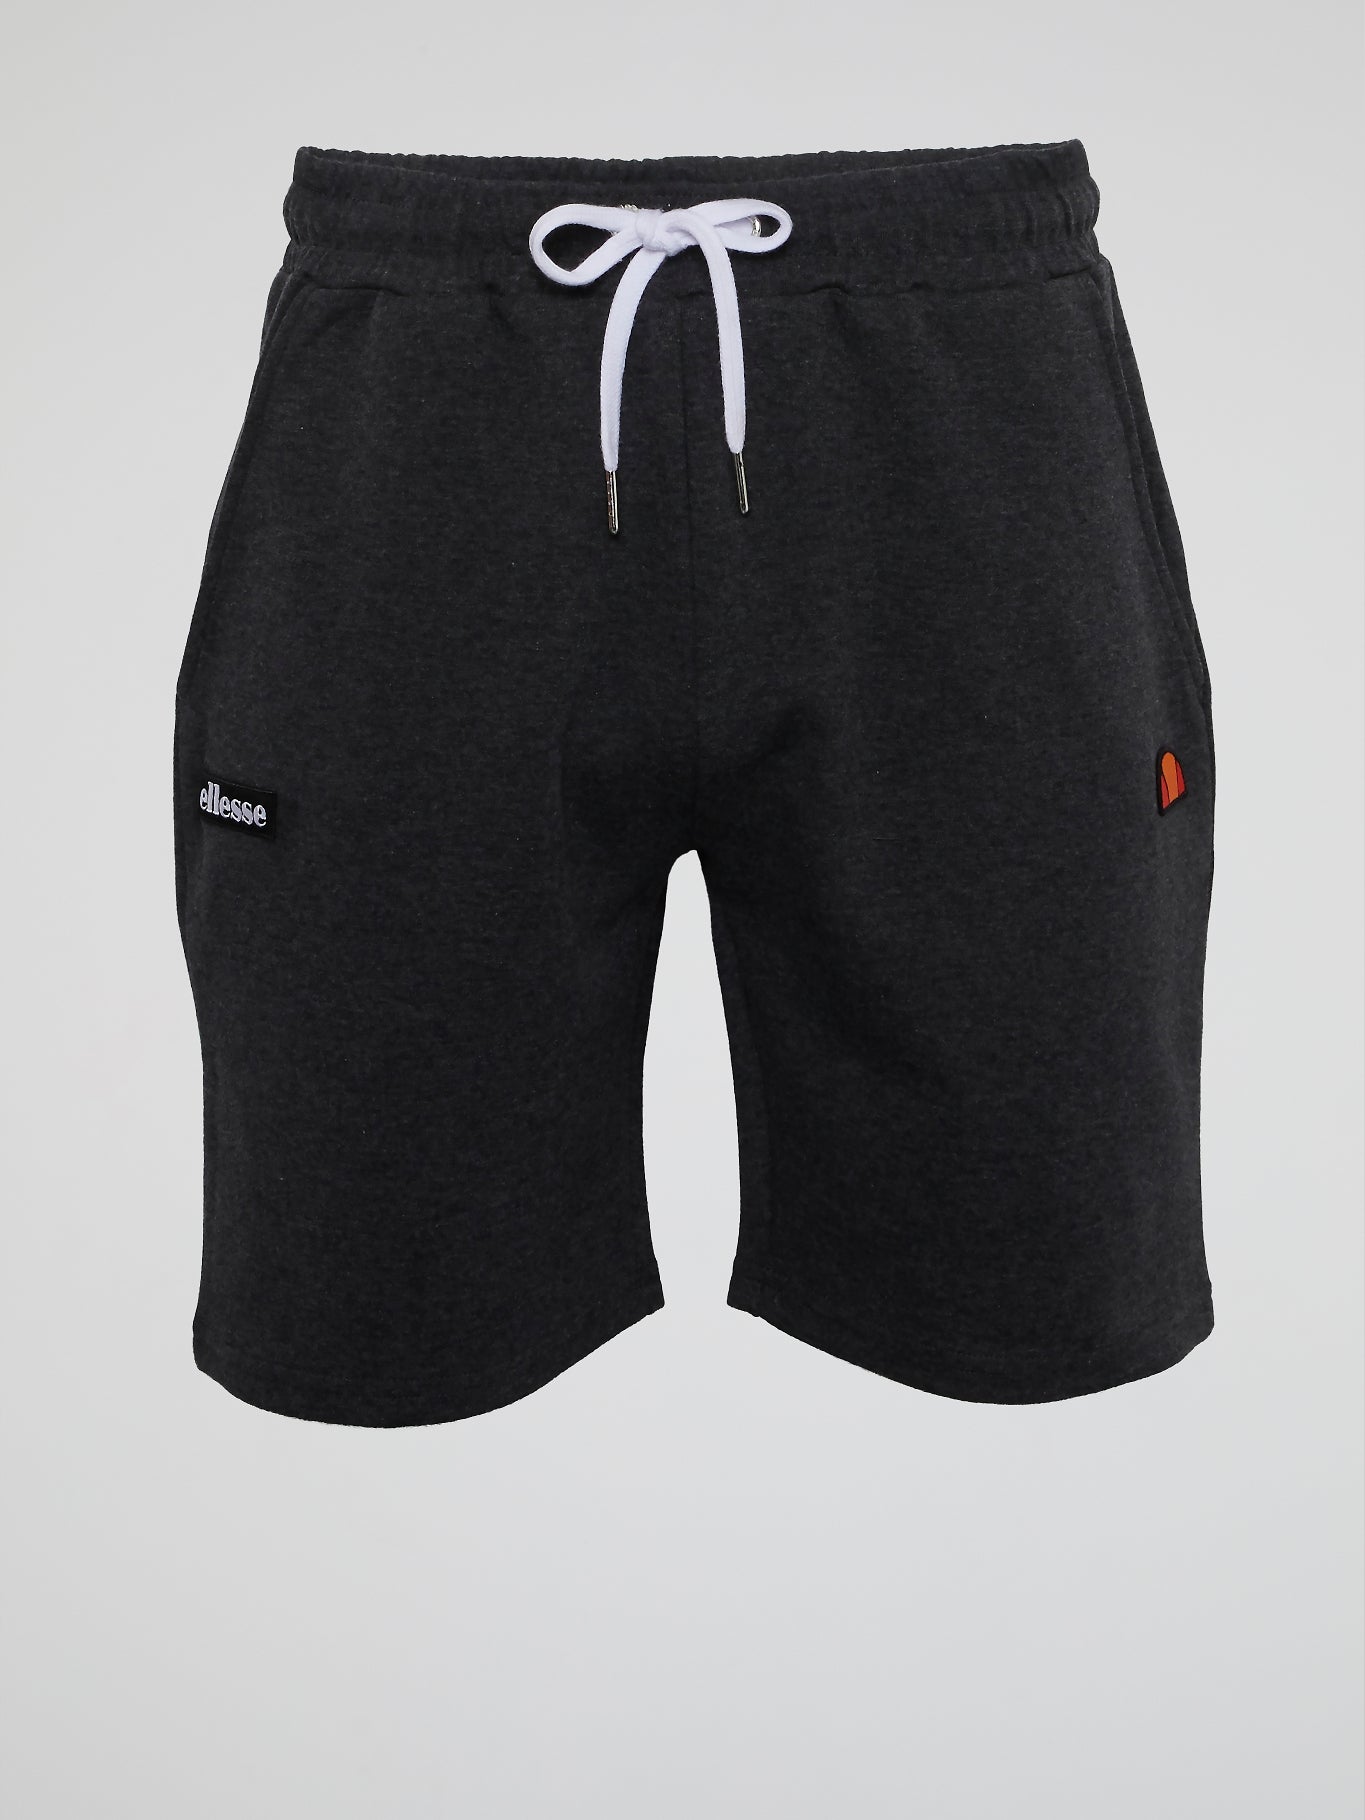 Sydney Grey Drawstring Shorts